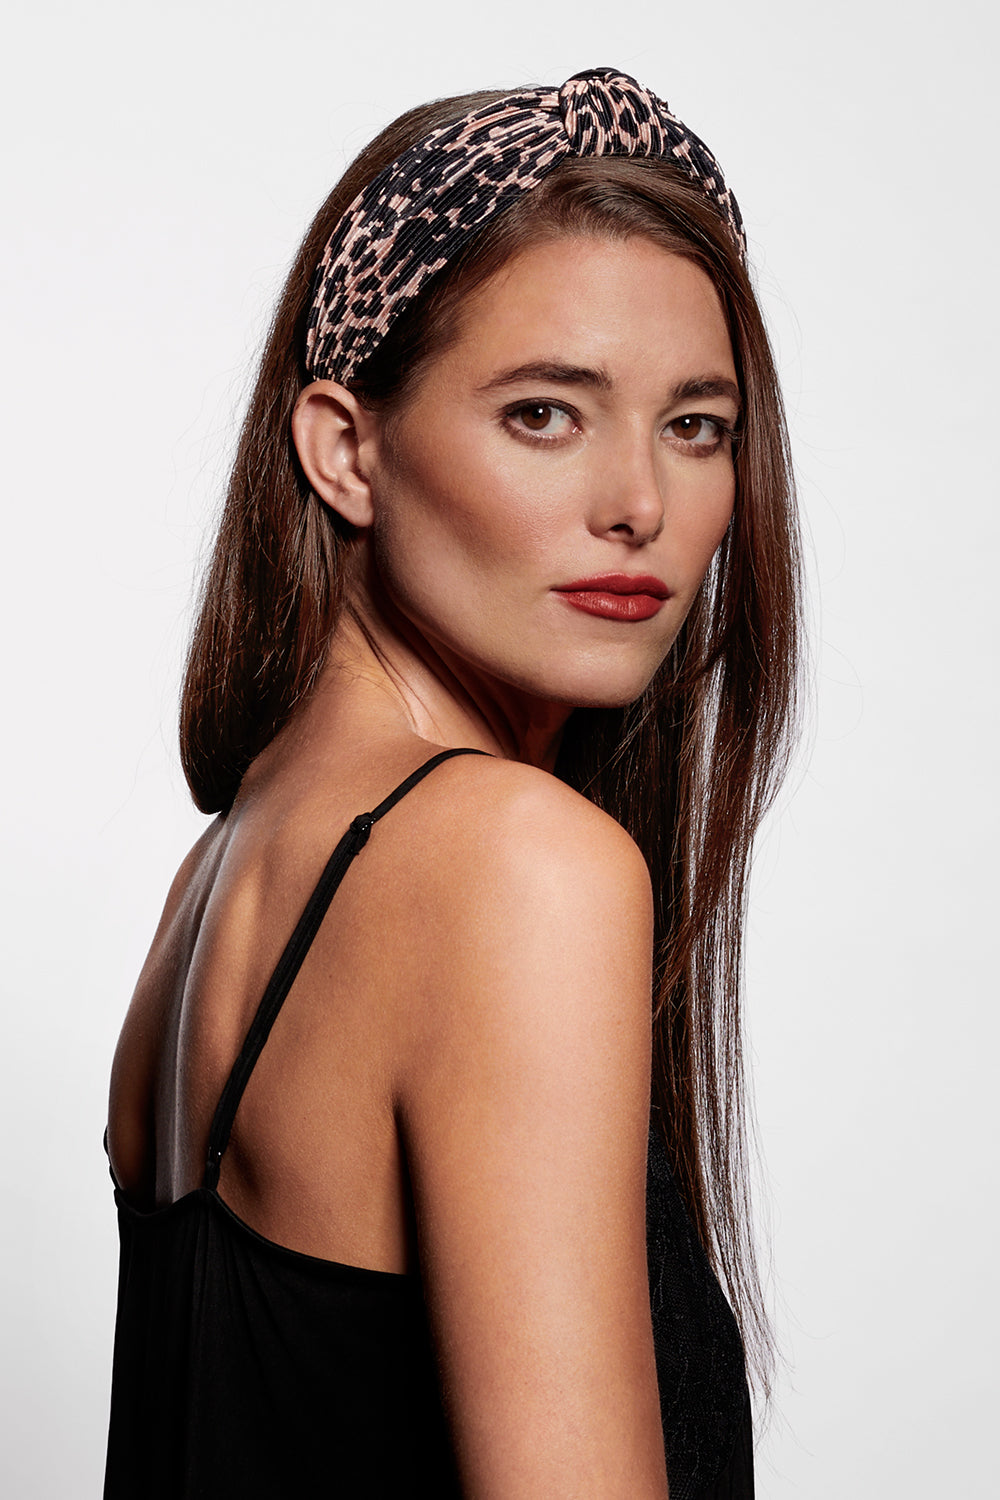 Lystrfac New Fashion Print Leopard Scrunchy Headband for Women Girls Trendy  Pleated Hairband Female Headpieces Hair